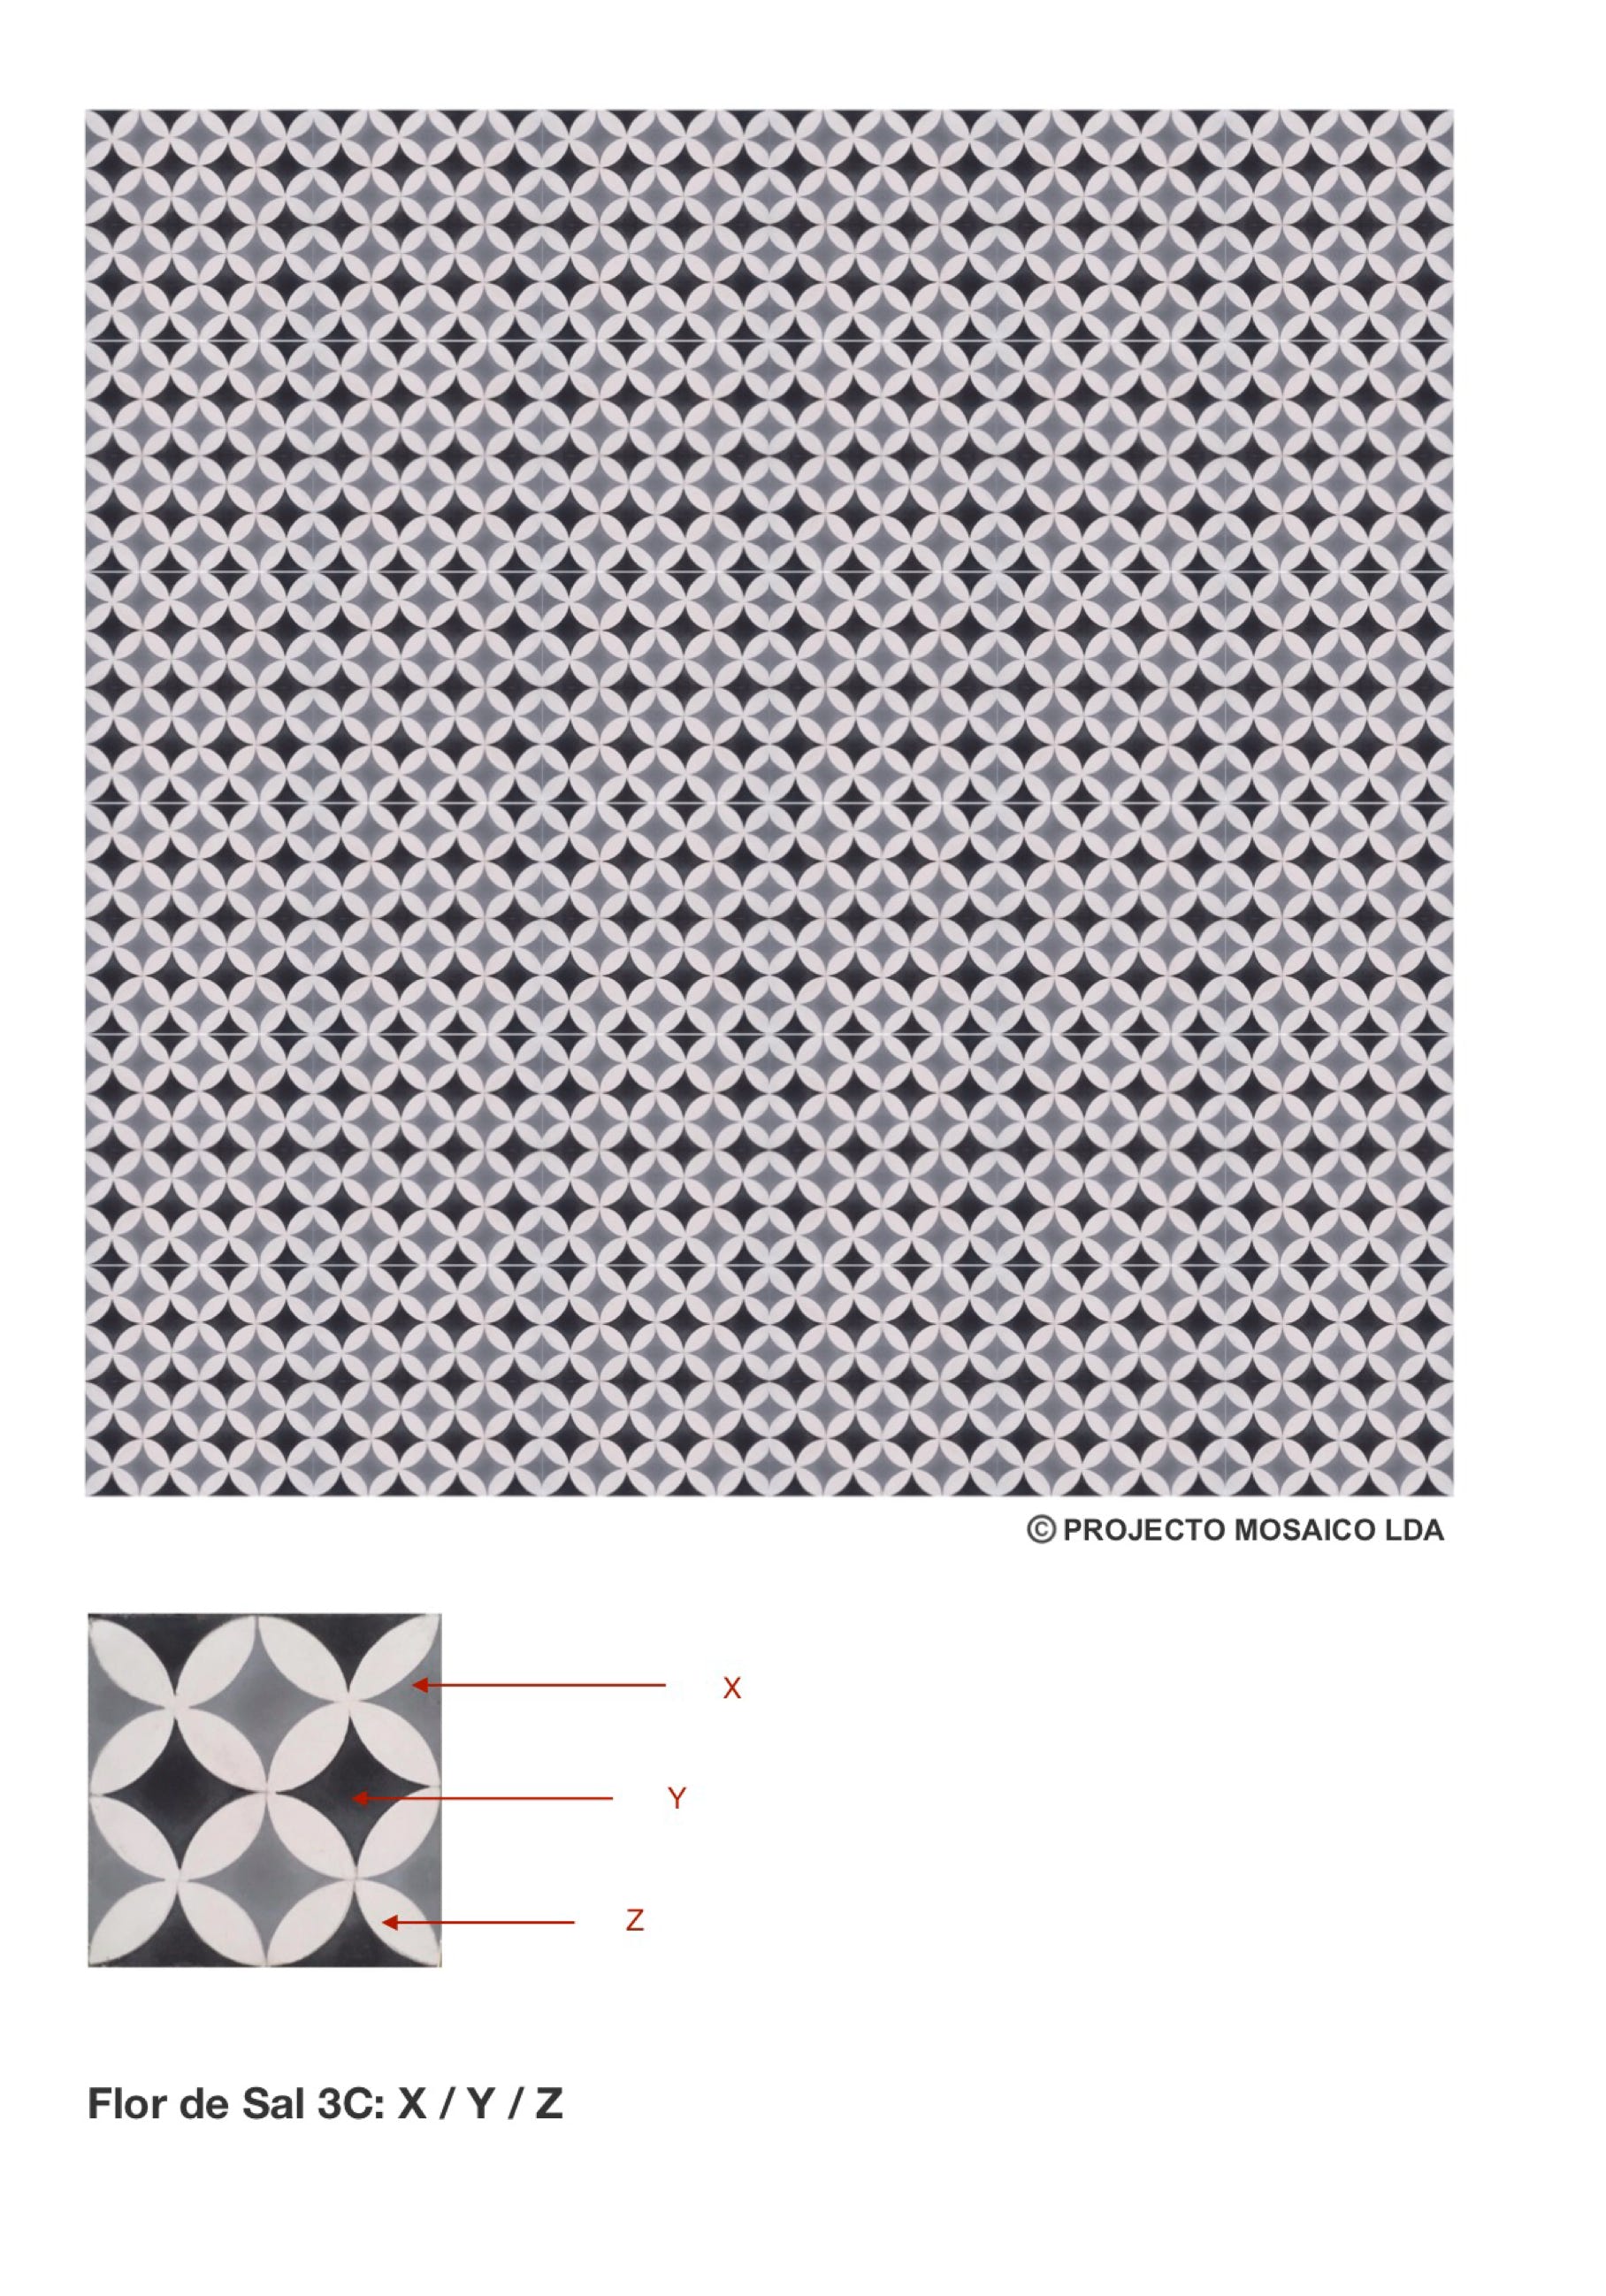 illustração de aplicação do mosaico hidráulico ref: Flor de Sal 3C